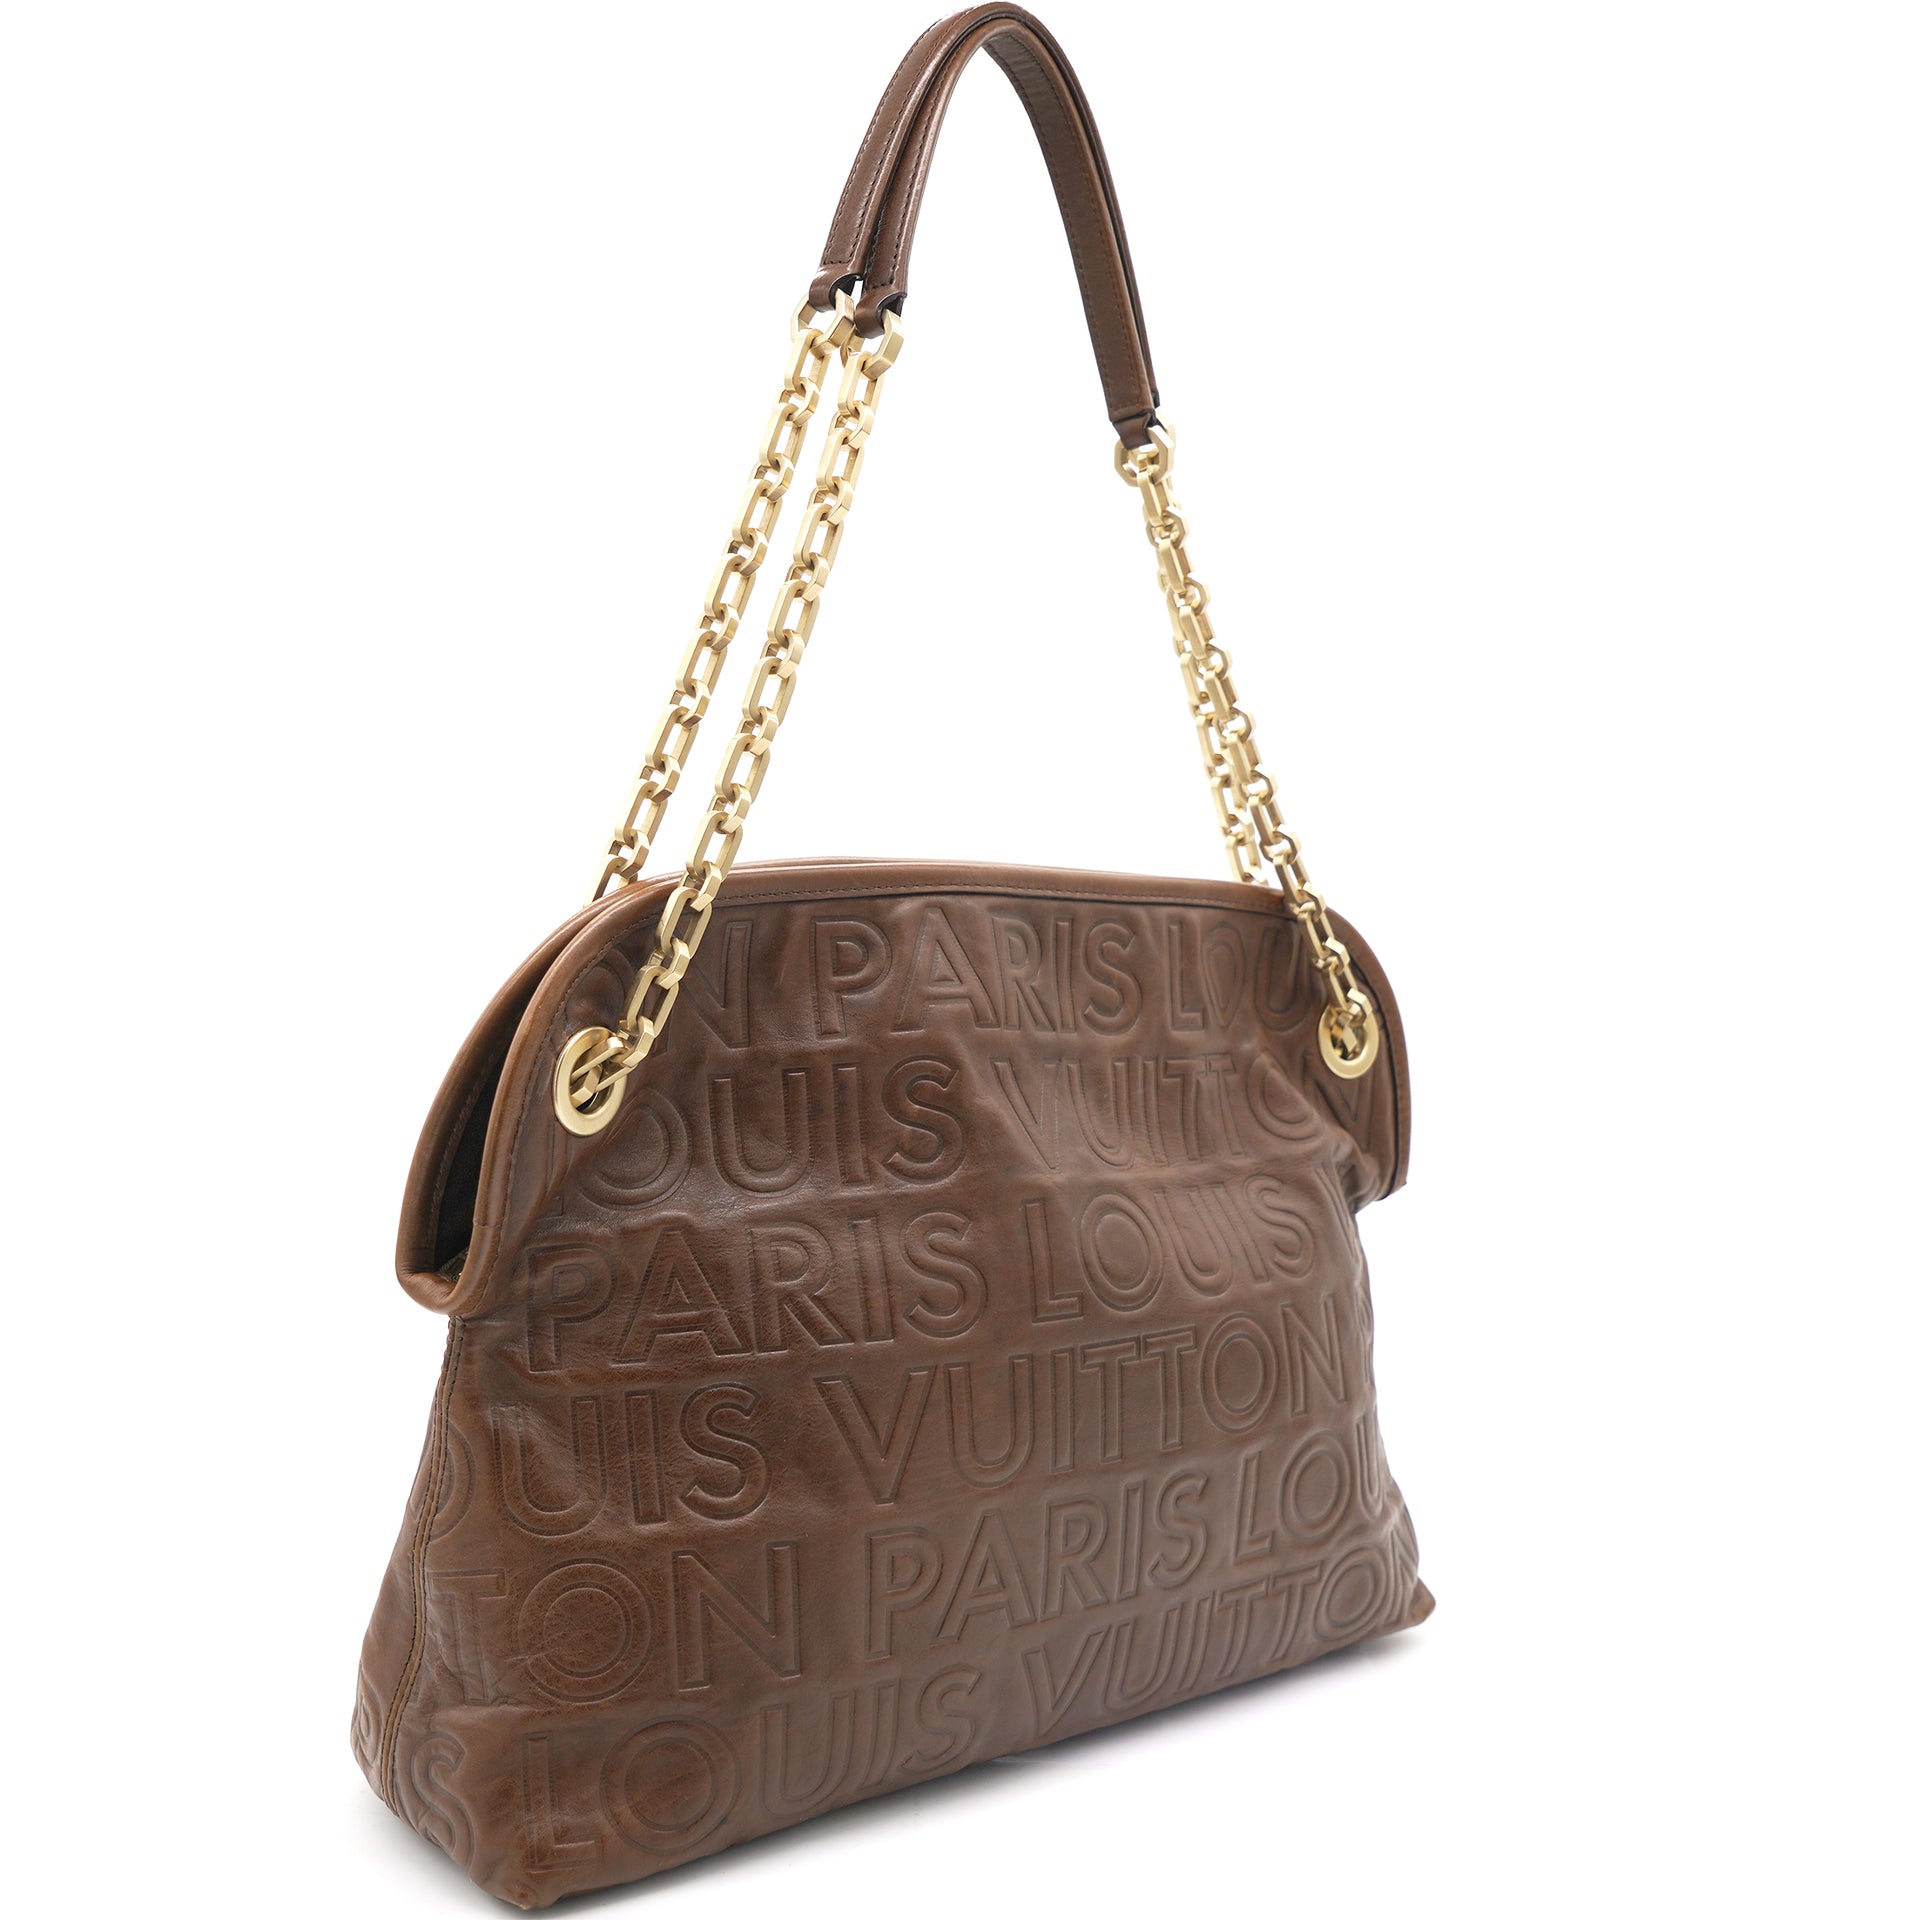 LOUIS VUITTON PARIS, brown leather satchel bag signed L…